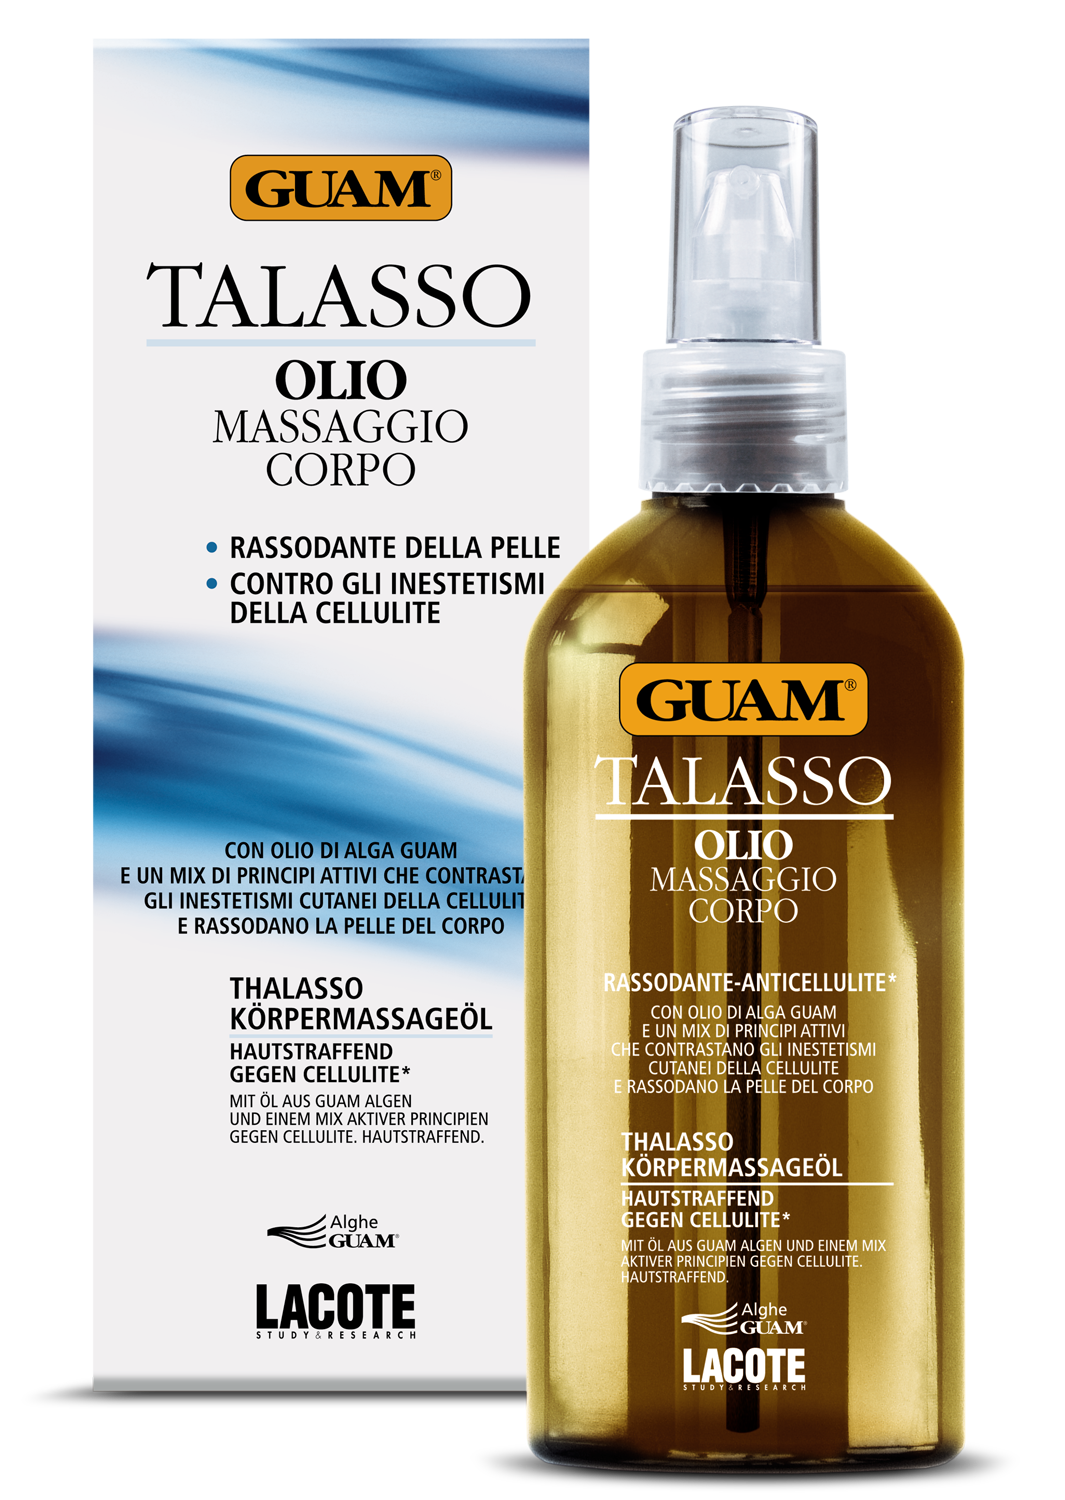 Guam Talasso Масло для тела массажное подтягивающее антицеллюлитное, 200 мл